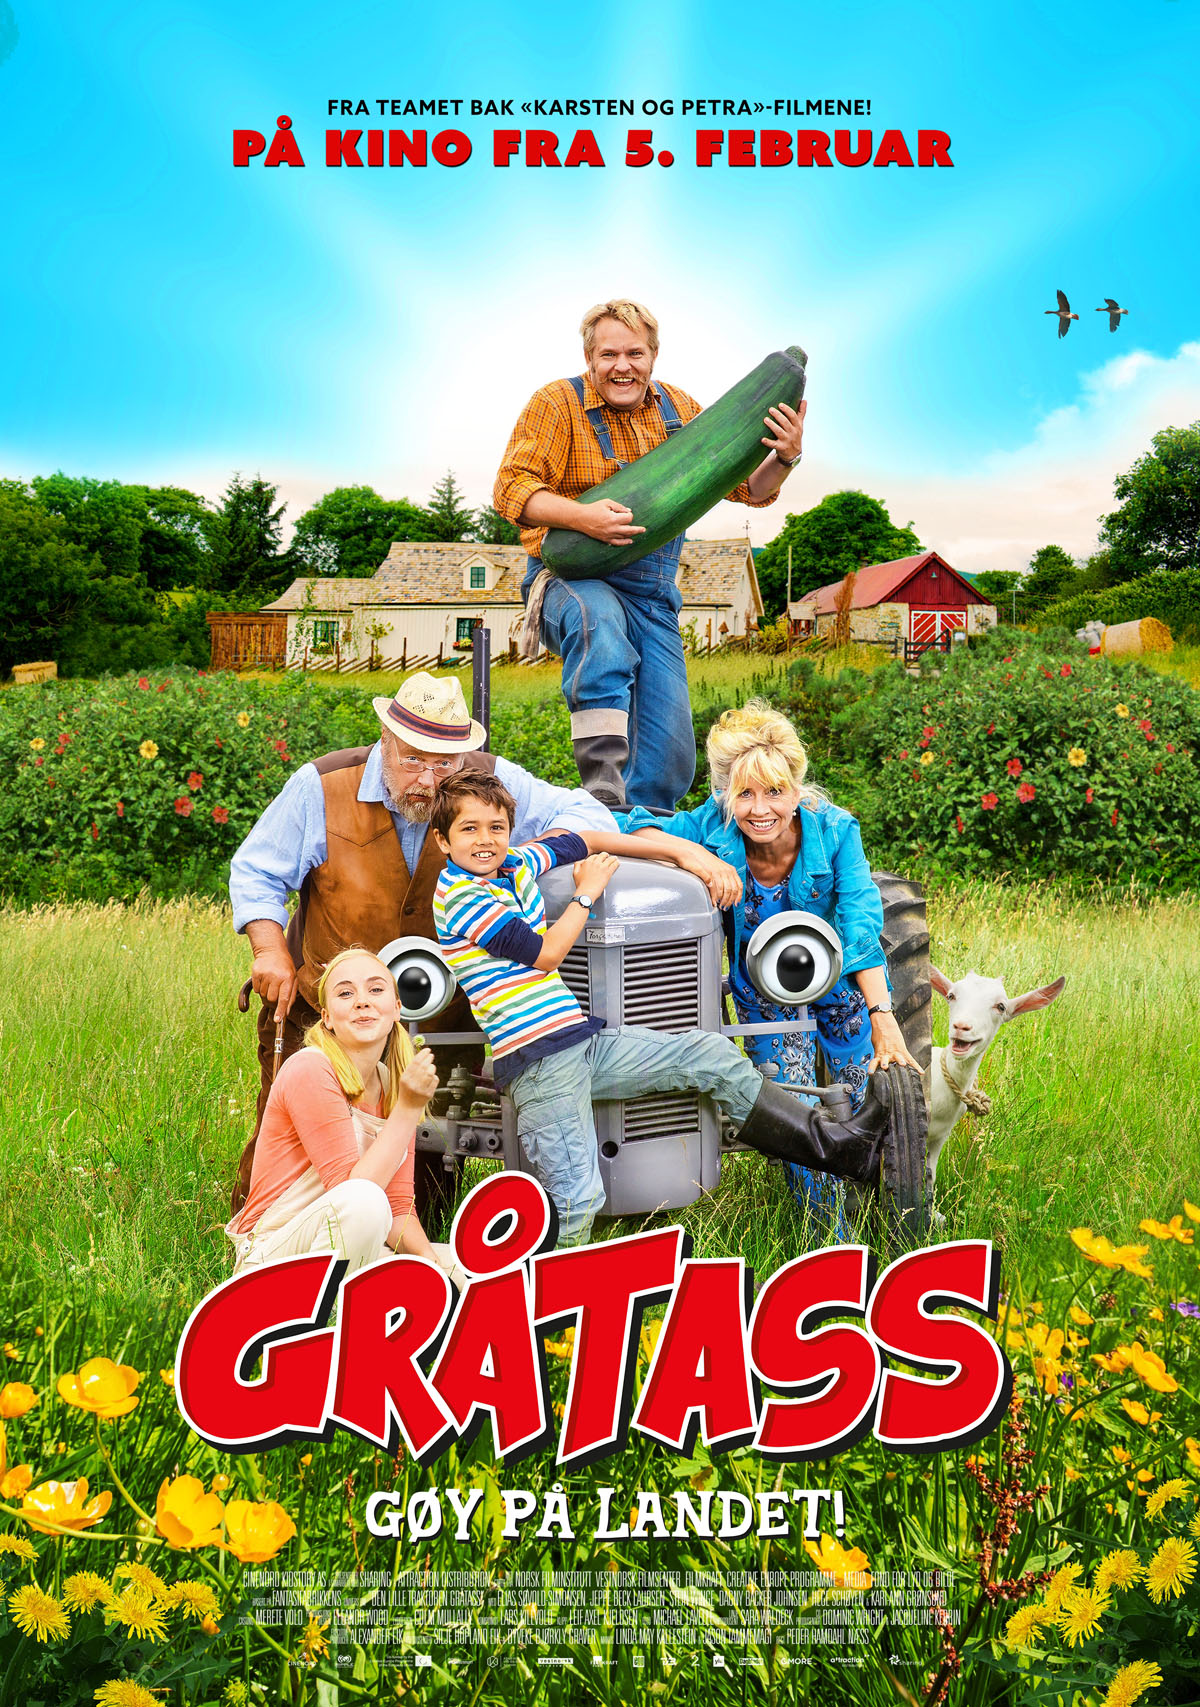 «Gråtass - gøy på landet!» – kinoplakat